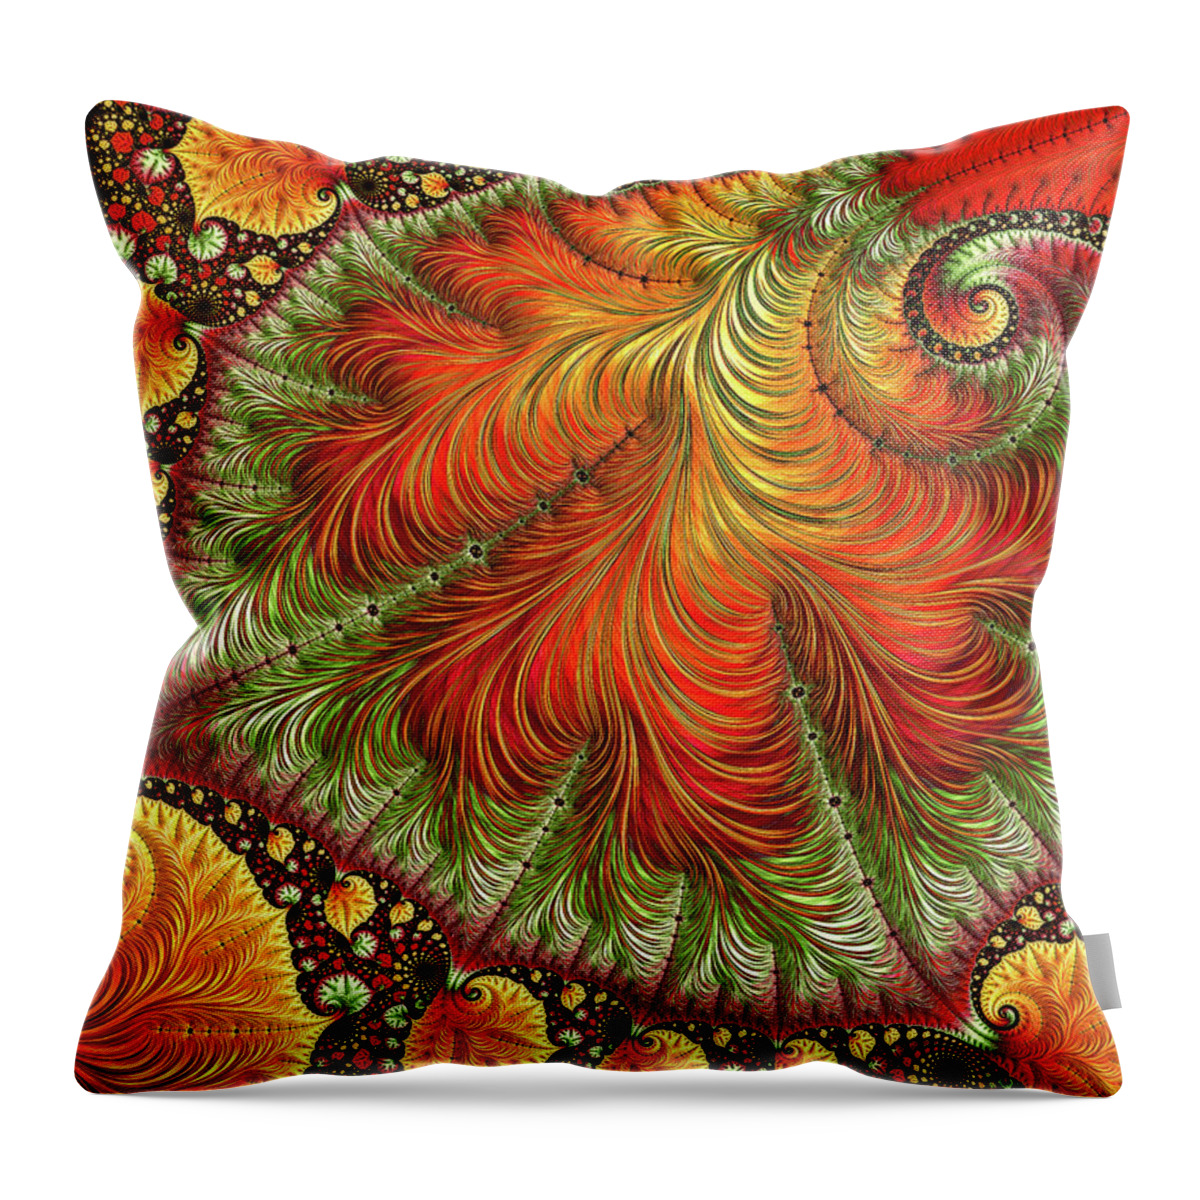 Fractal Throw Pillow featuring the digital art Rare Cultivar by Susan Maxwell Schmidt